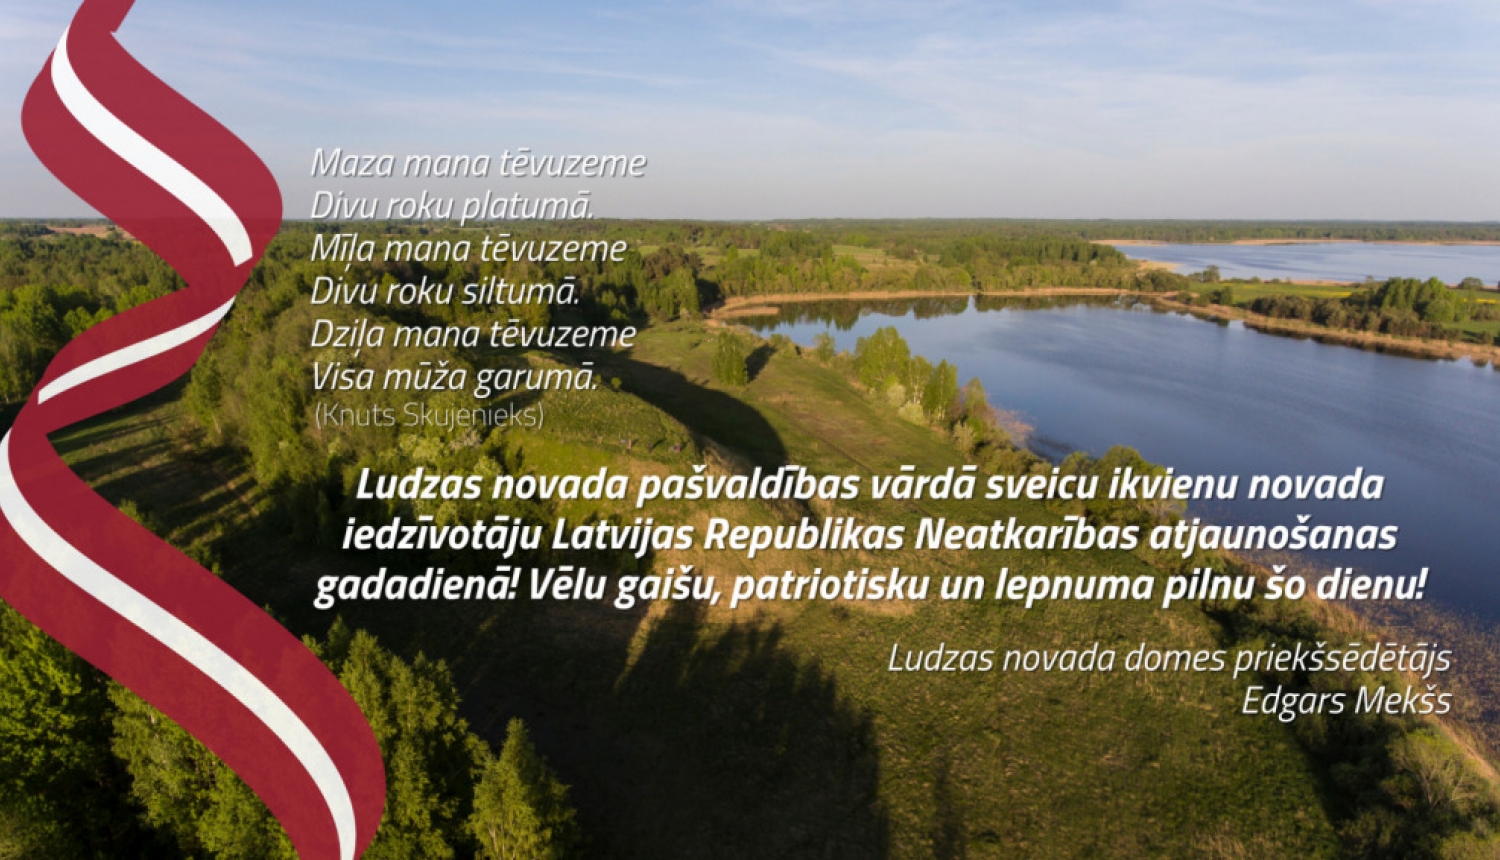 Ludzas novada pašvaldība sveic Latvijas Republikas Neatkarības atjaunošanas dienā!